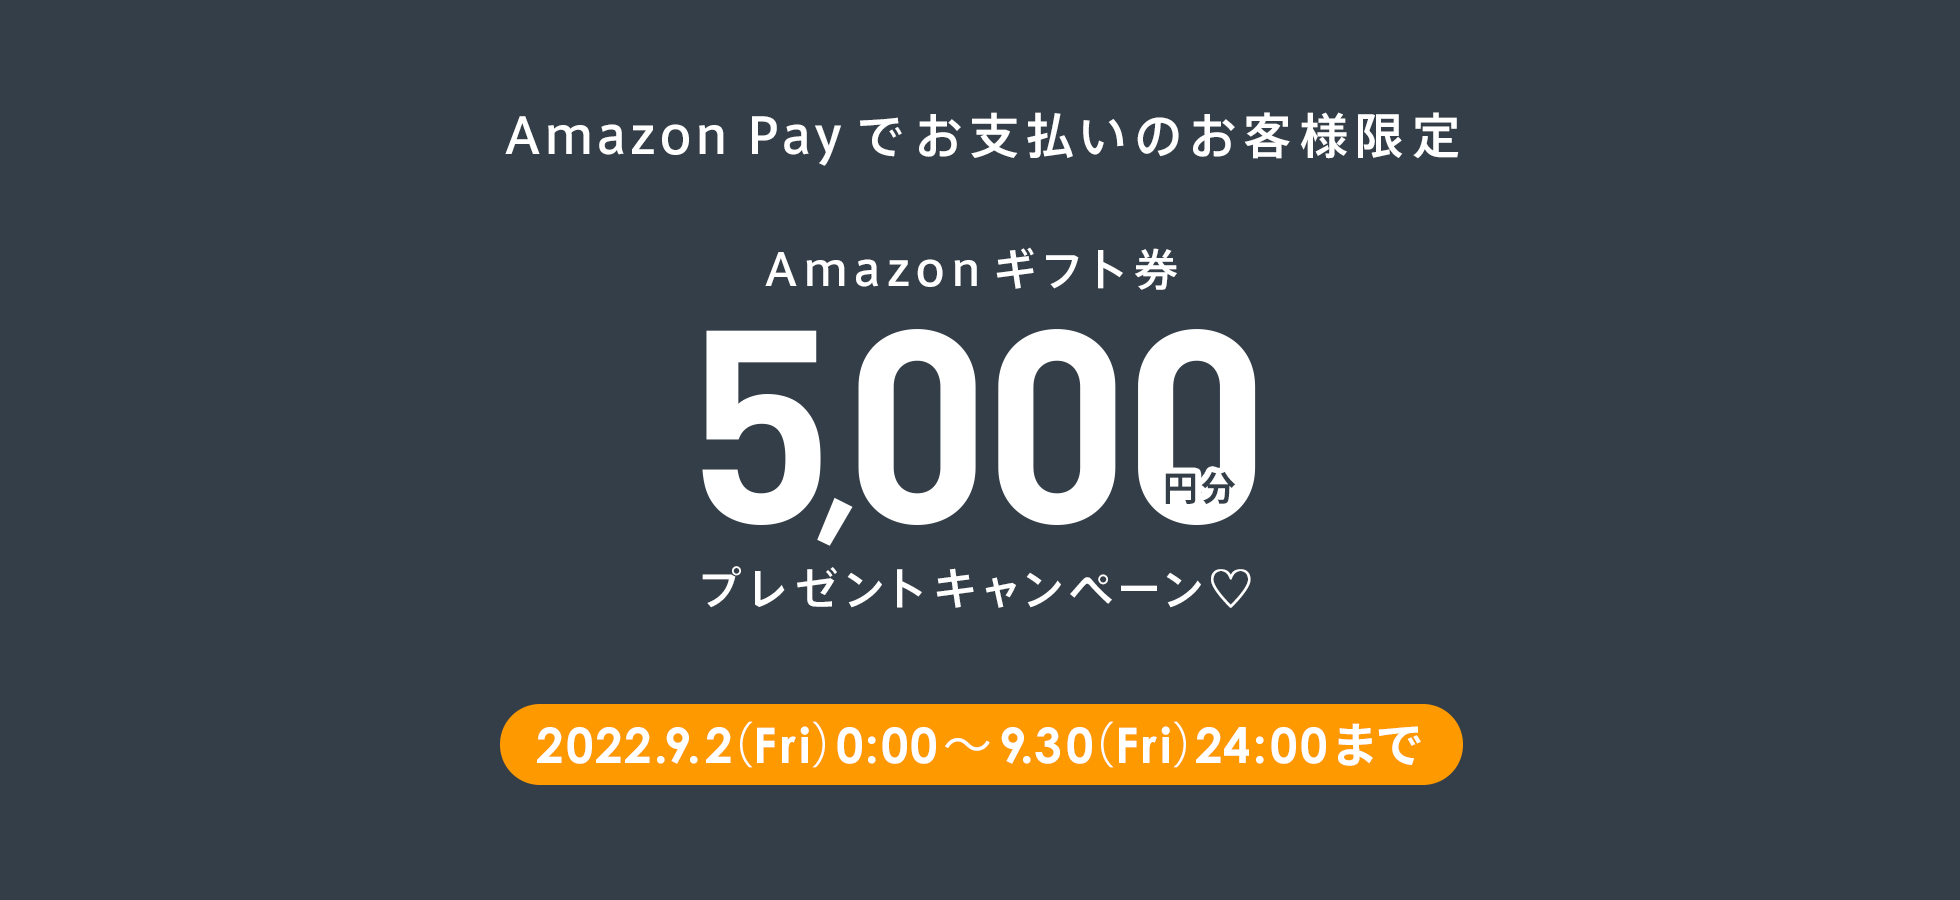 Amazon Payででお支払いのお客様限定 Amazonギフト券 5000円分 プレゼントキャンペーン♡